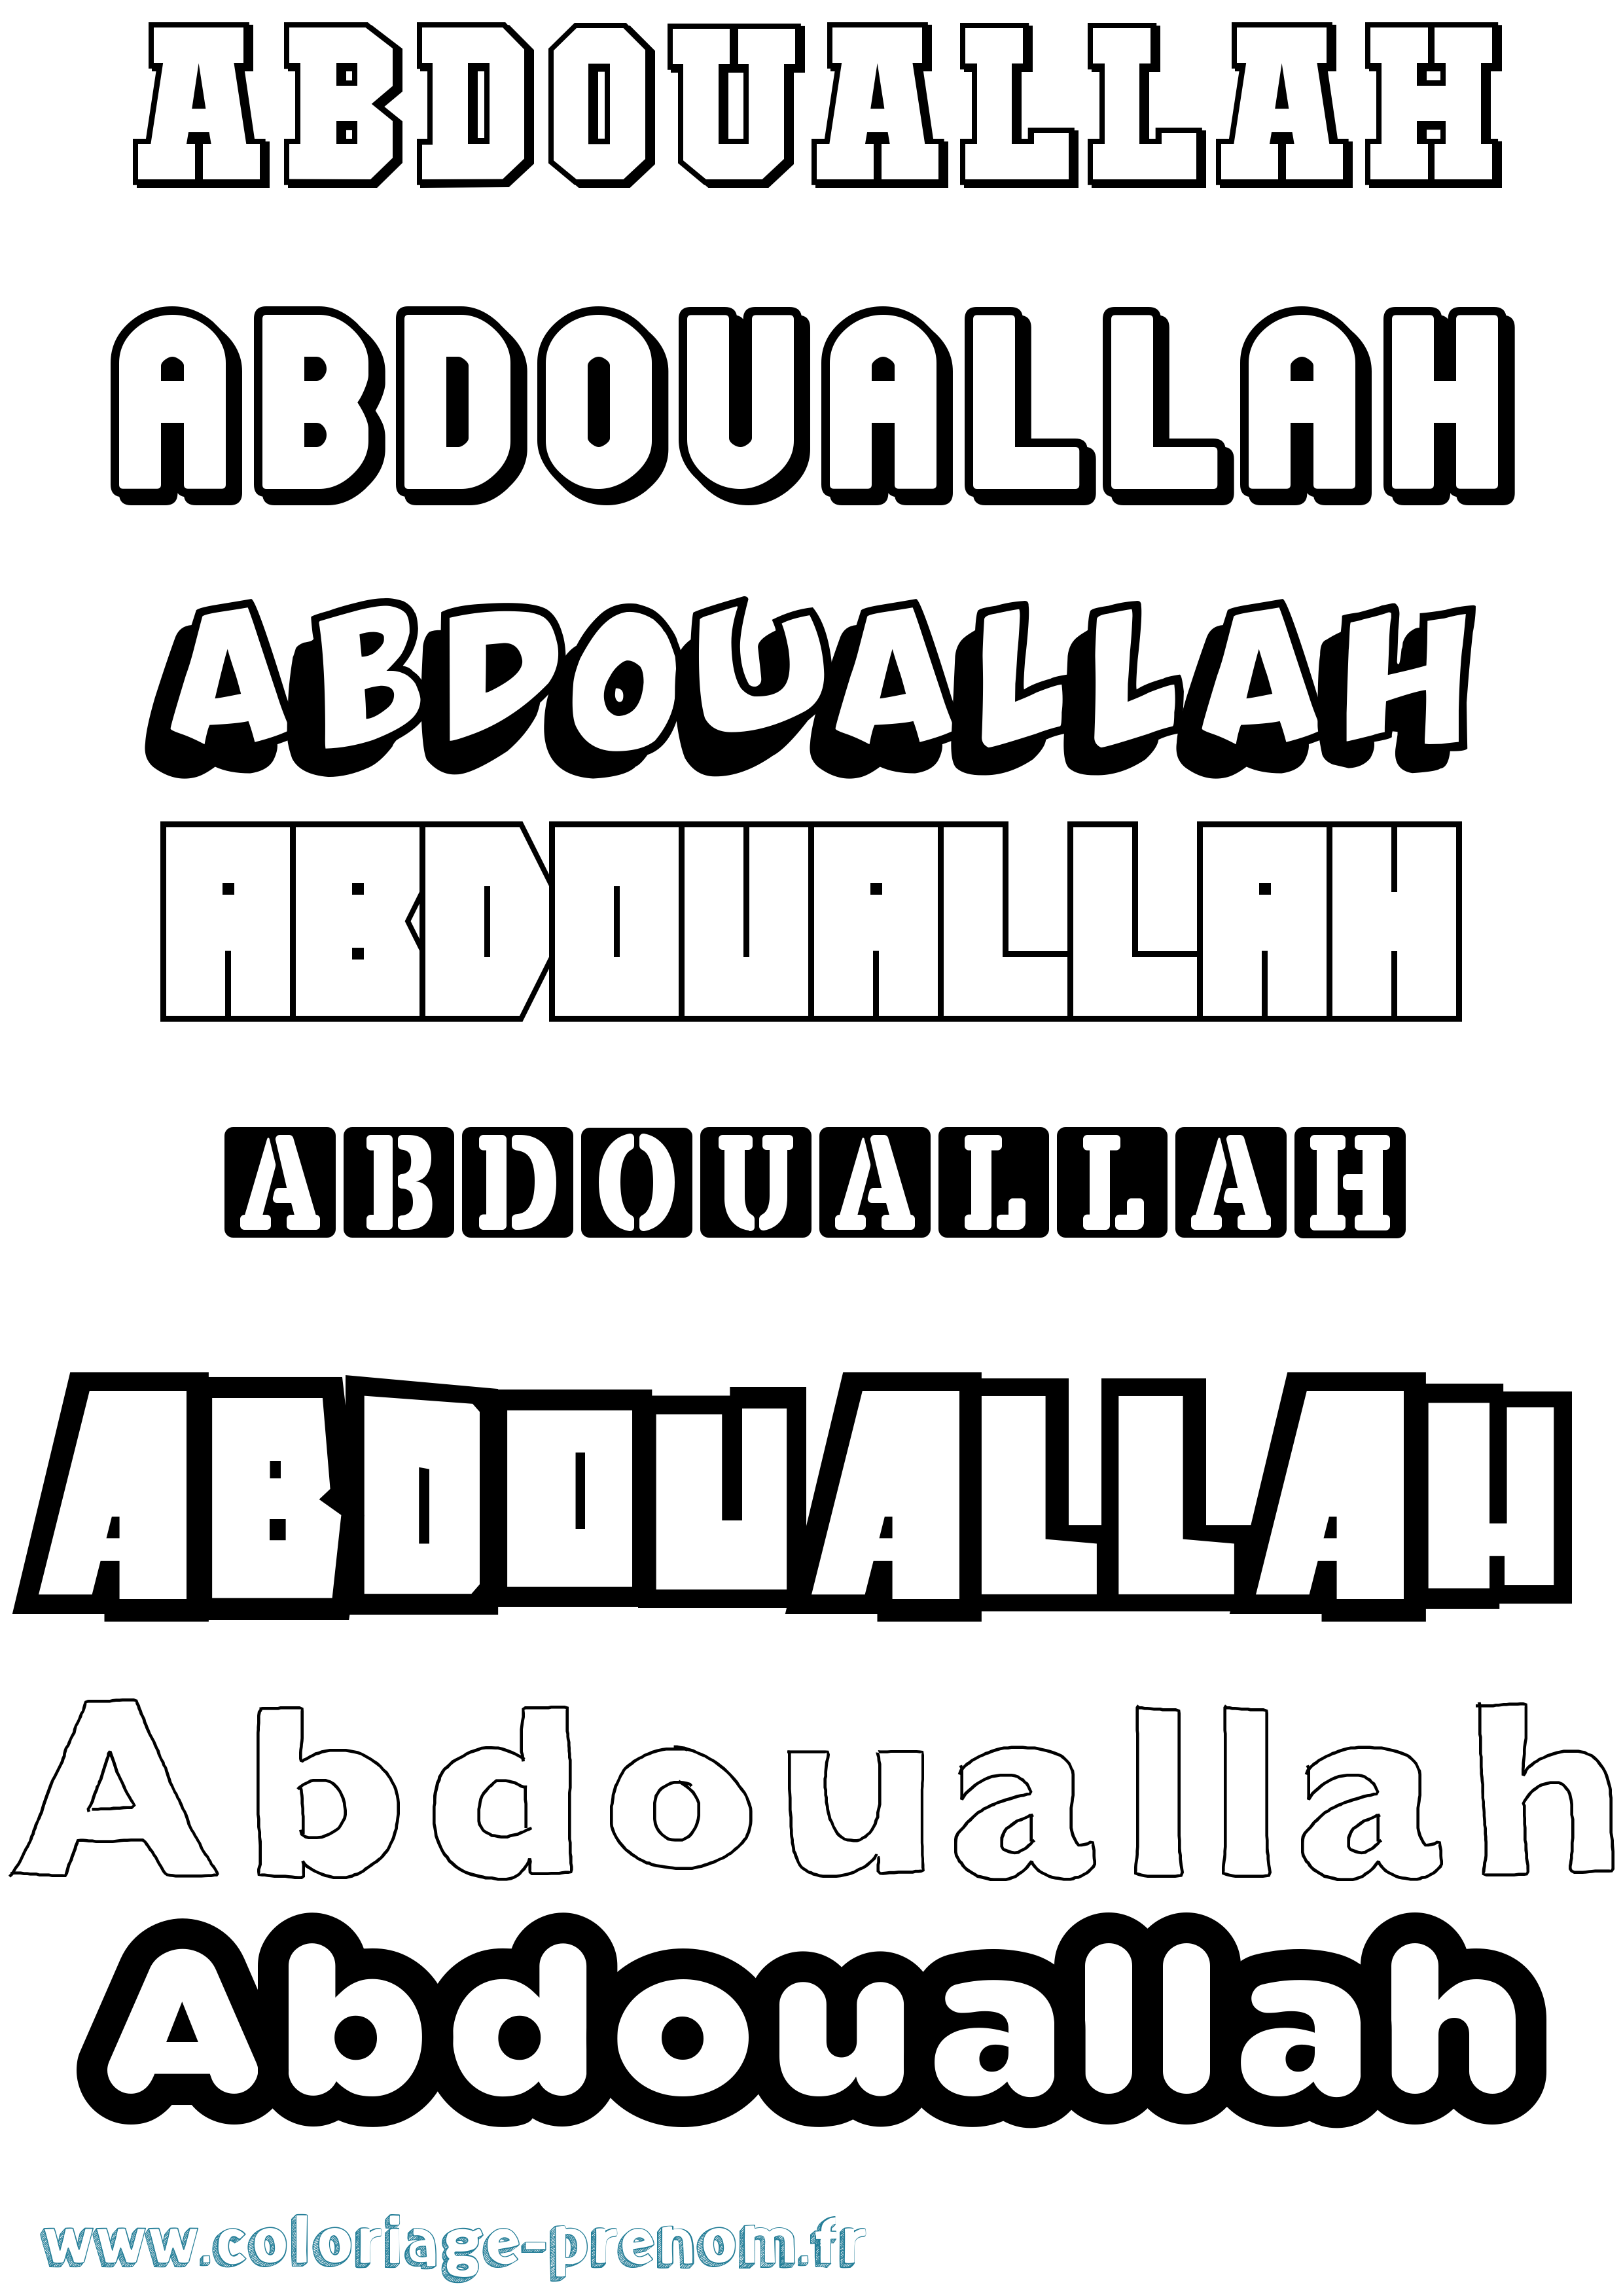 Coloriage prénom Abdouallah Simple